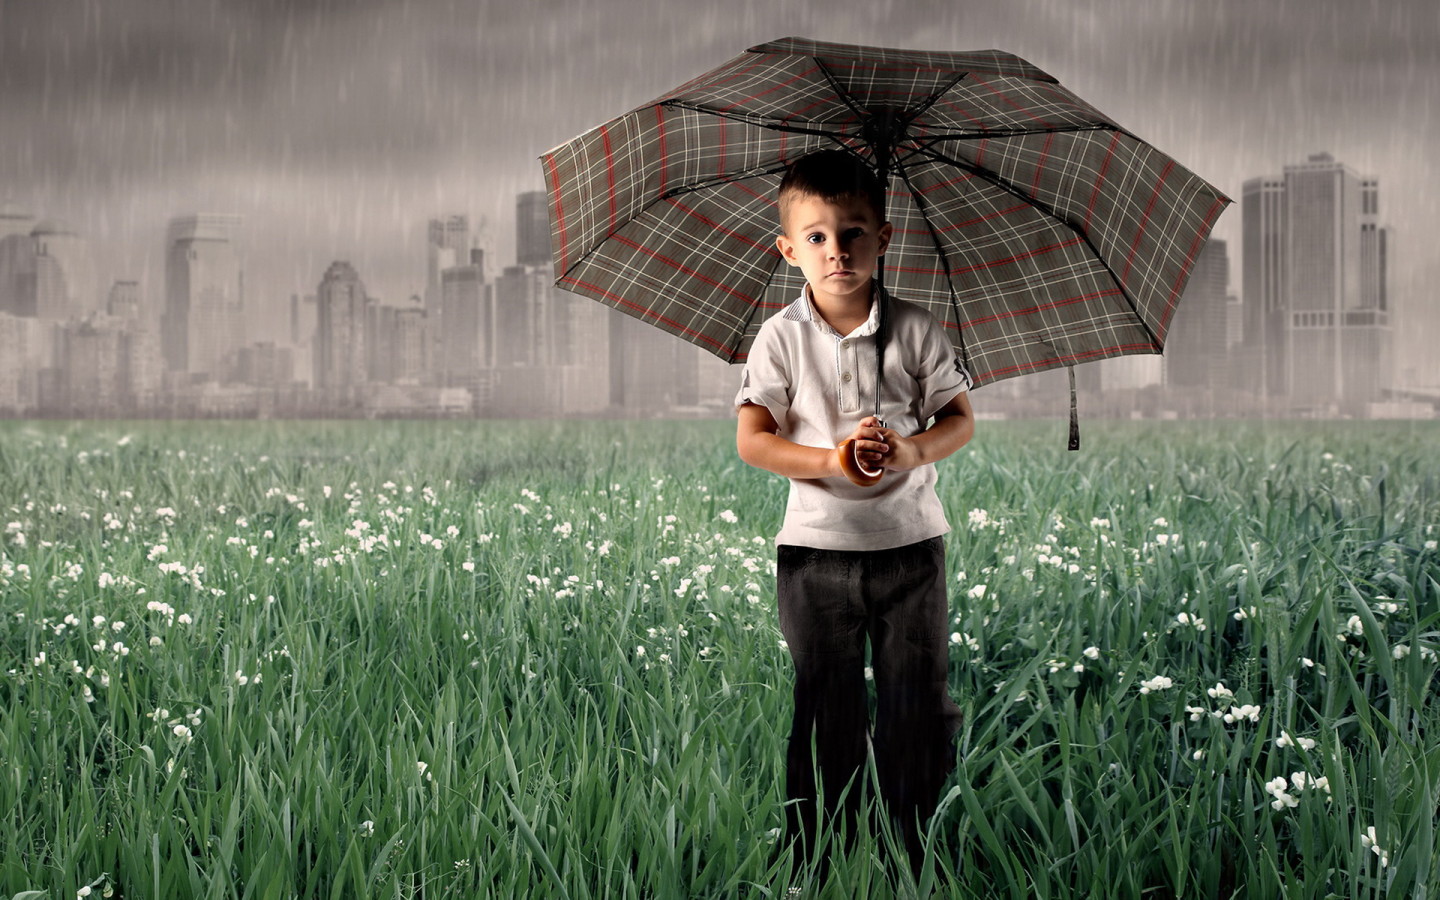 Мальчик под зонтом